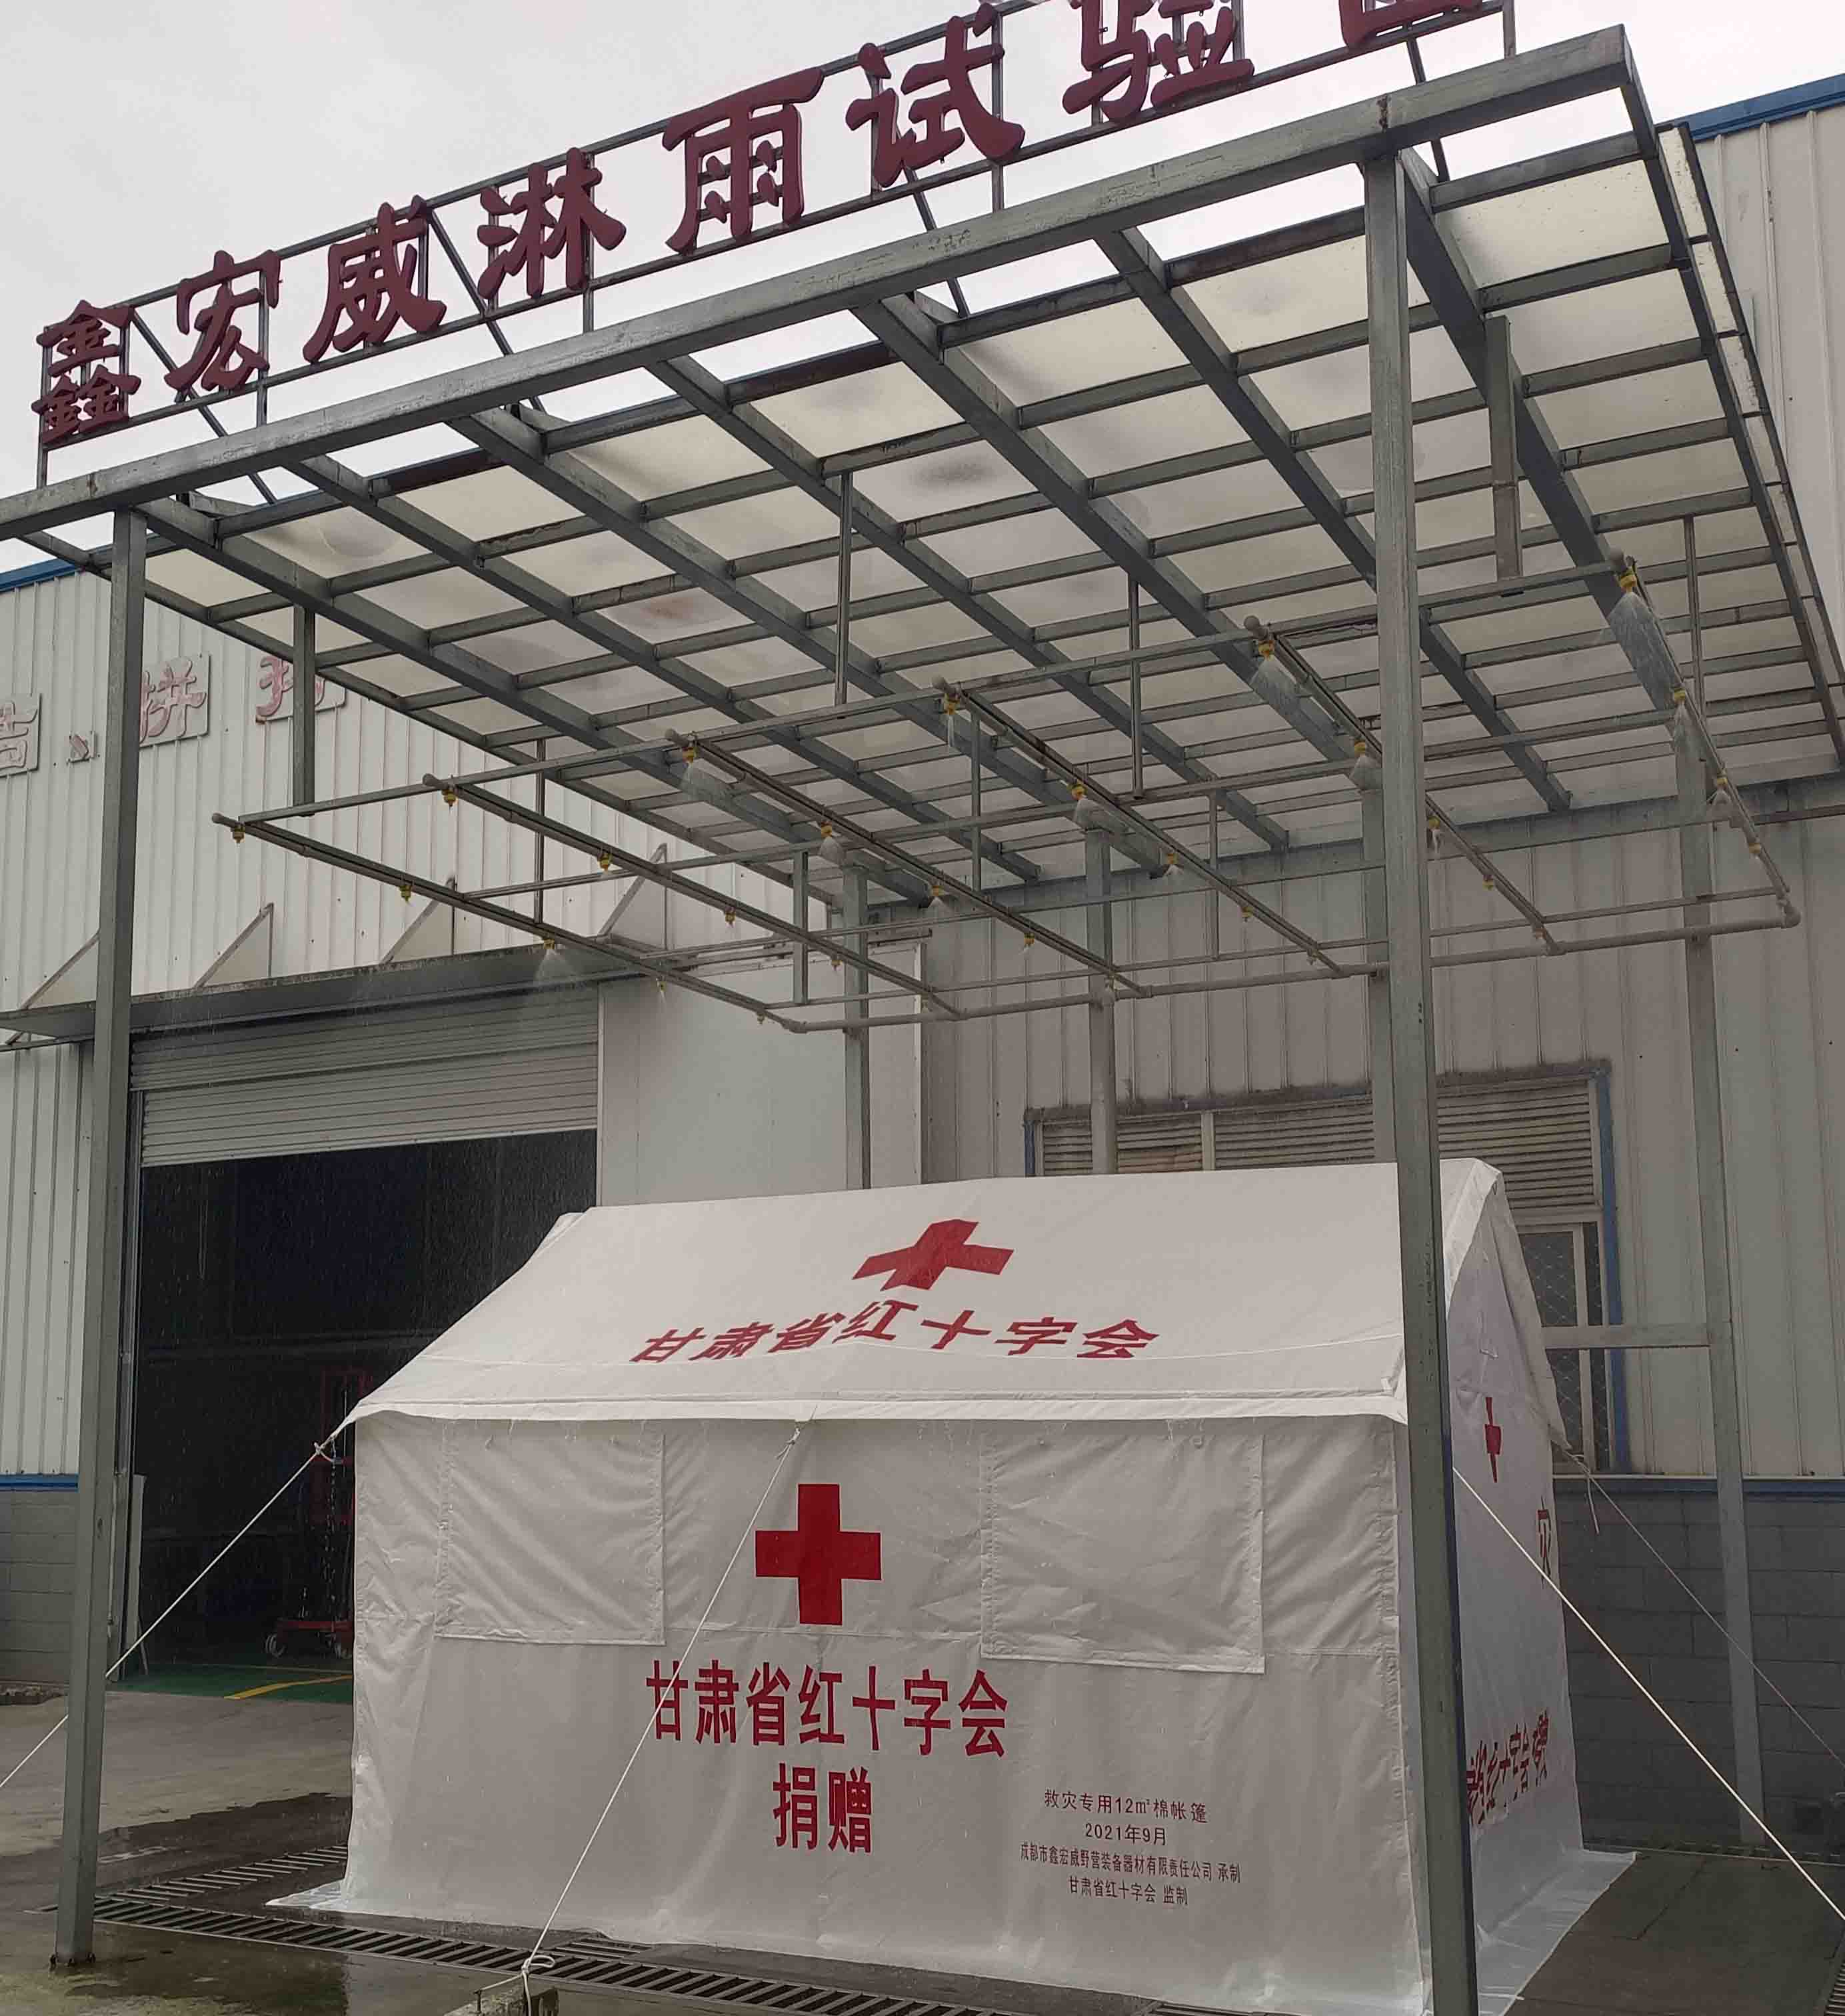 甘肃省红十字会项目帐篷完成出厂淋雨试验